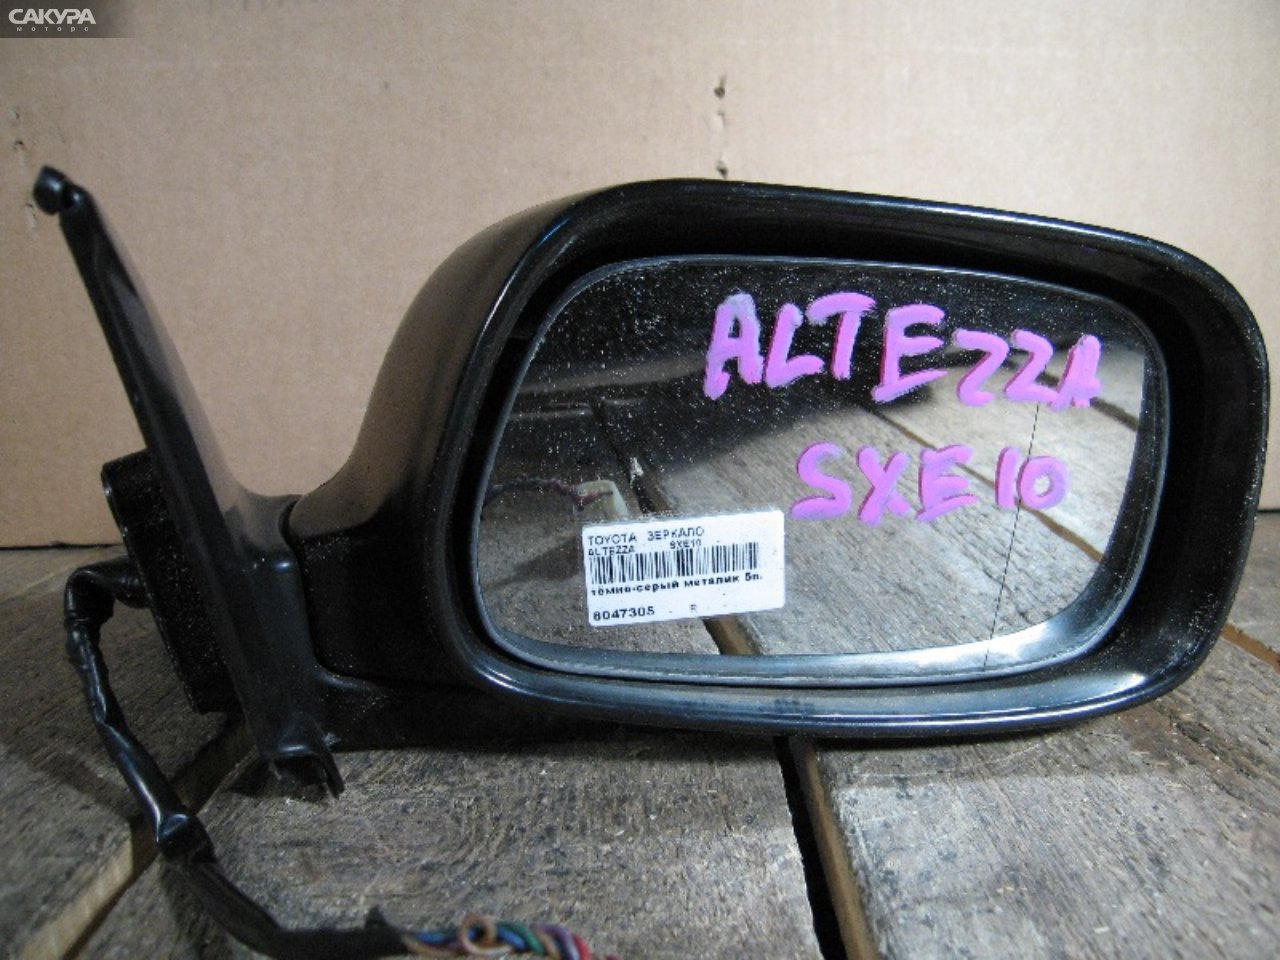 Зеркало боковое правое Toyota Altezza SXE10 3S-GE: купить в Сакура Абакан.